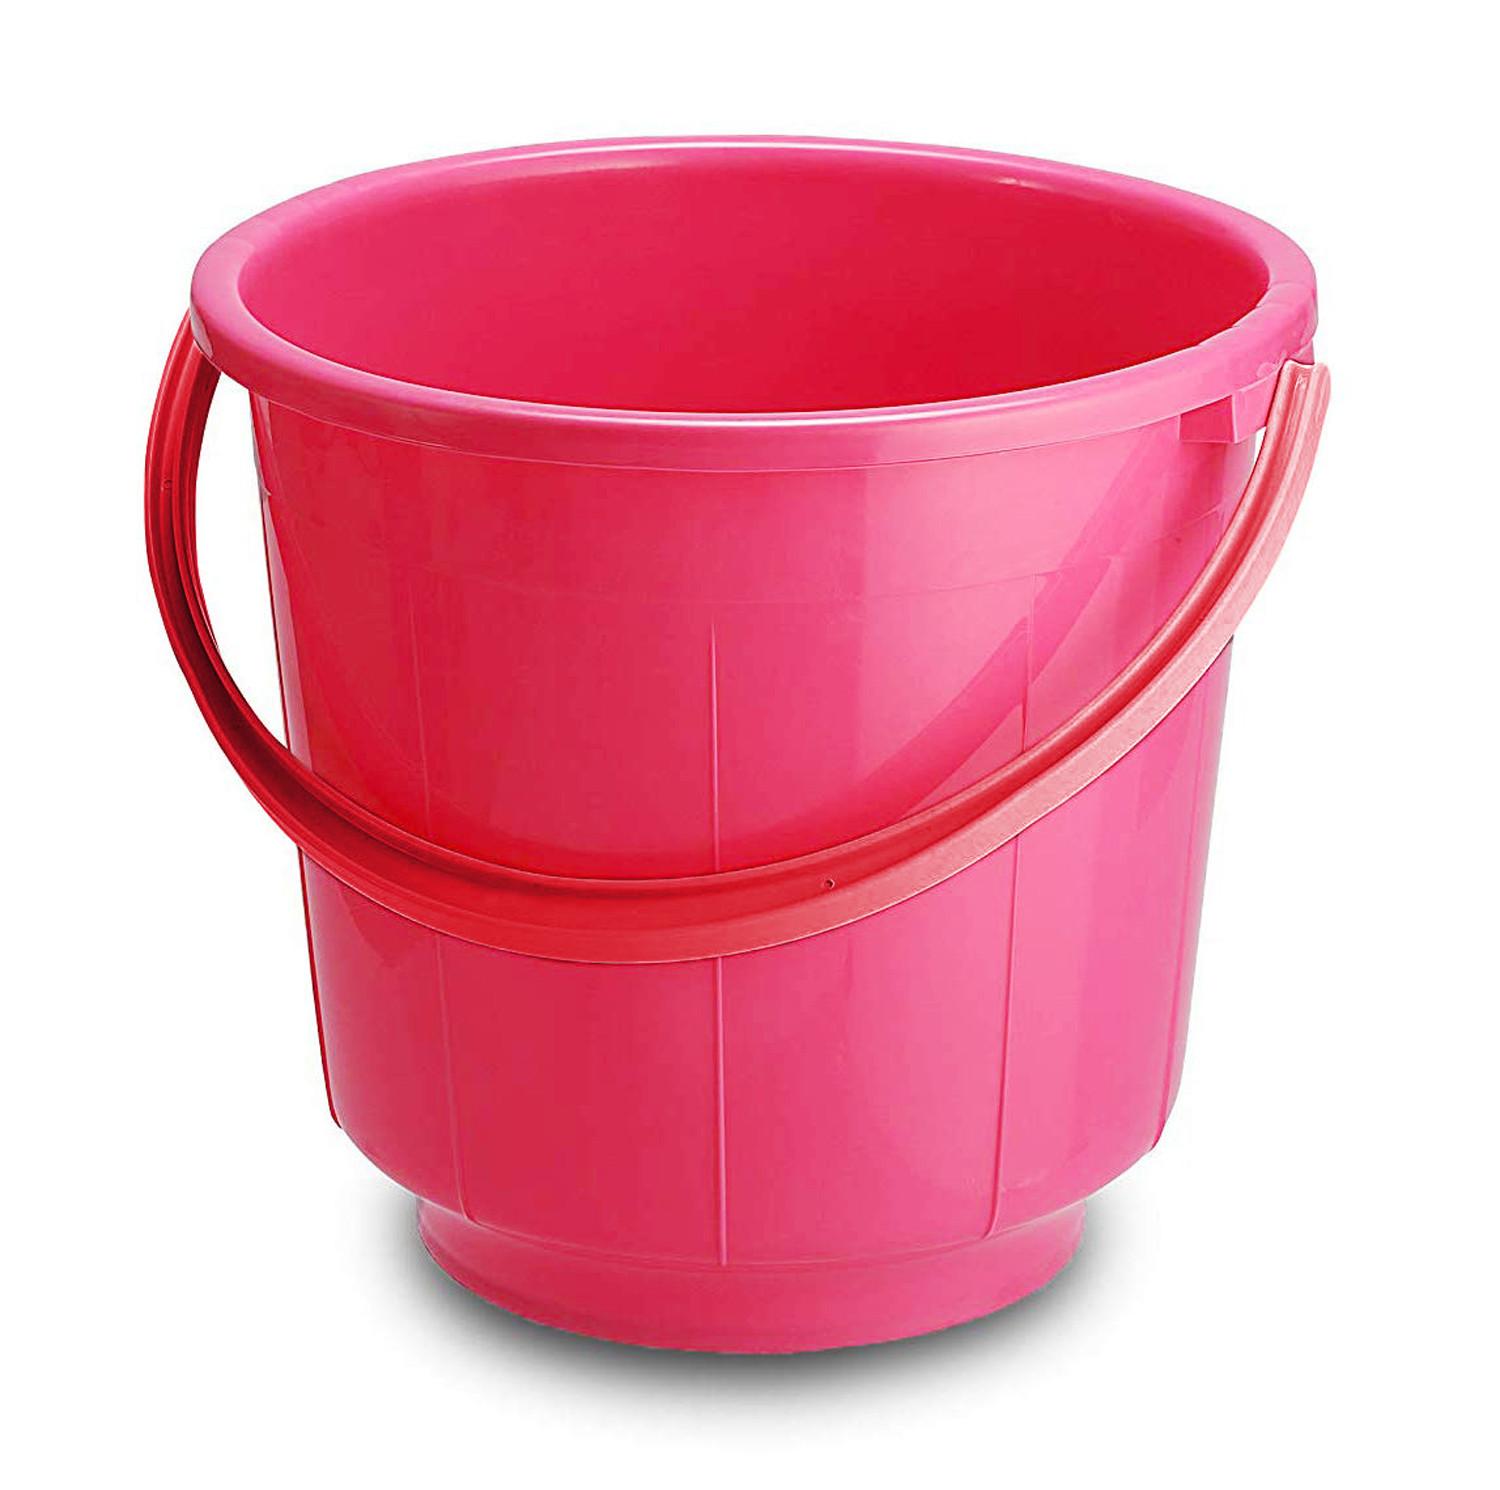 Kuber Industries  Unbreakable Strong Plastic Bathroom Bucket 13 Ltr (Green & Pink) -CTKTC37913